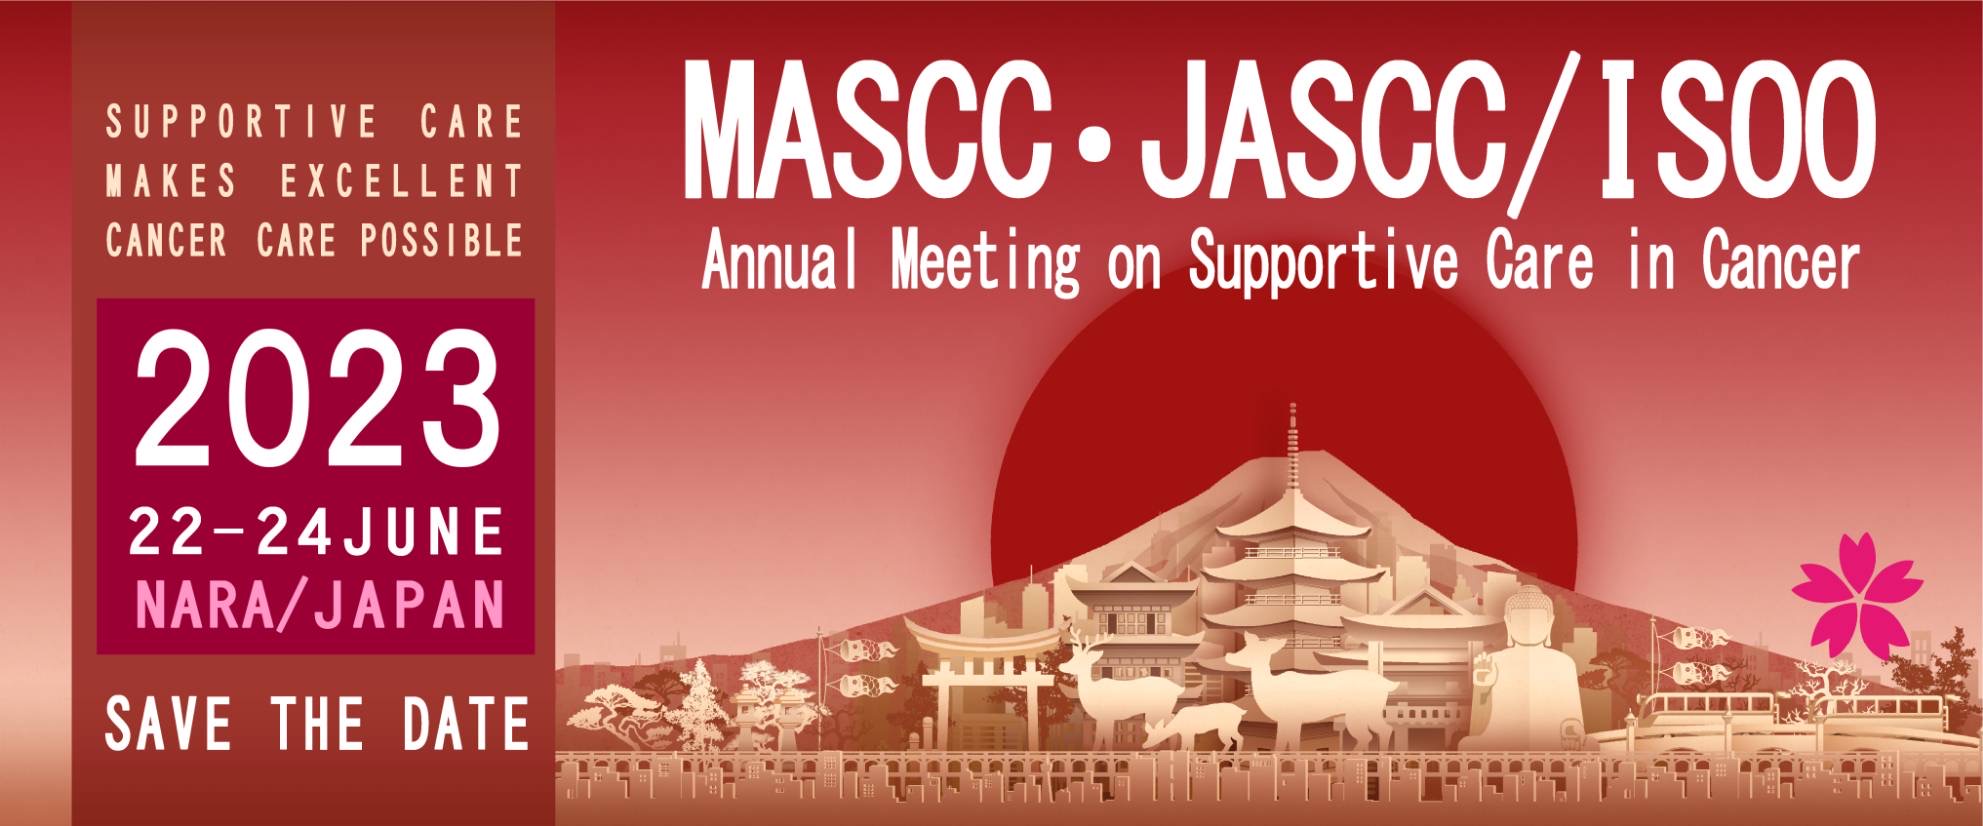 MASCC/JASCC2023